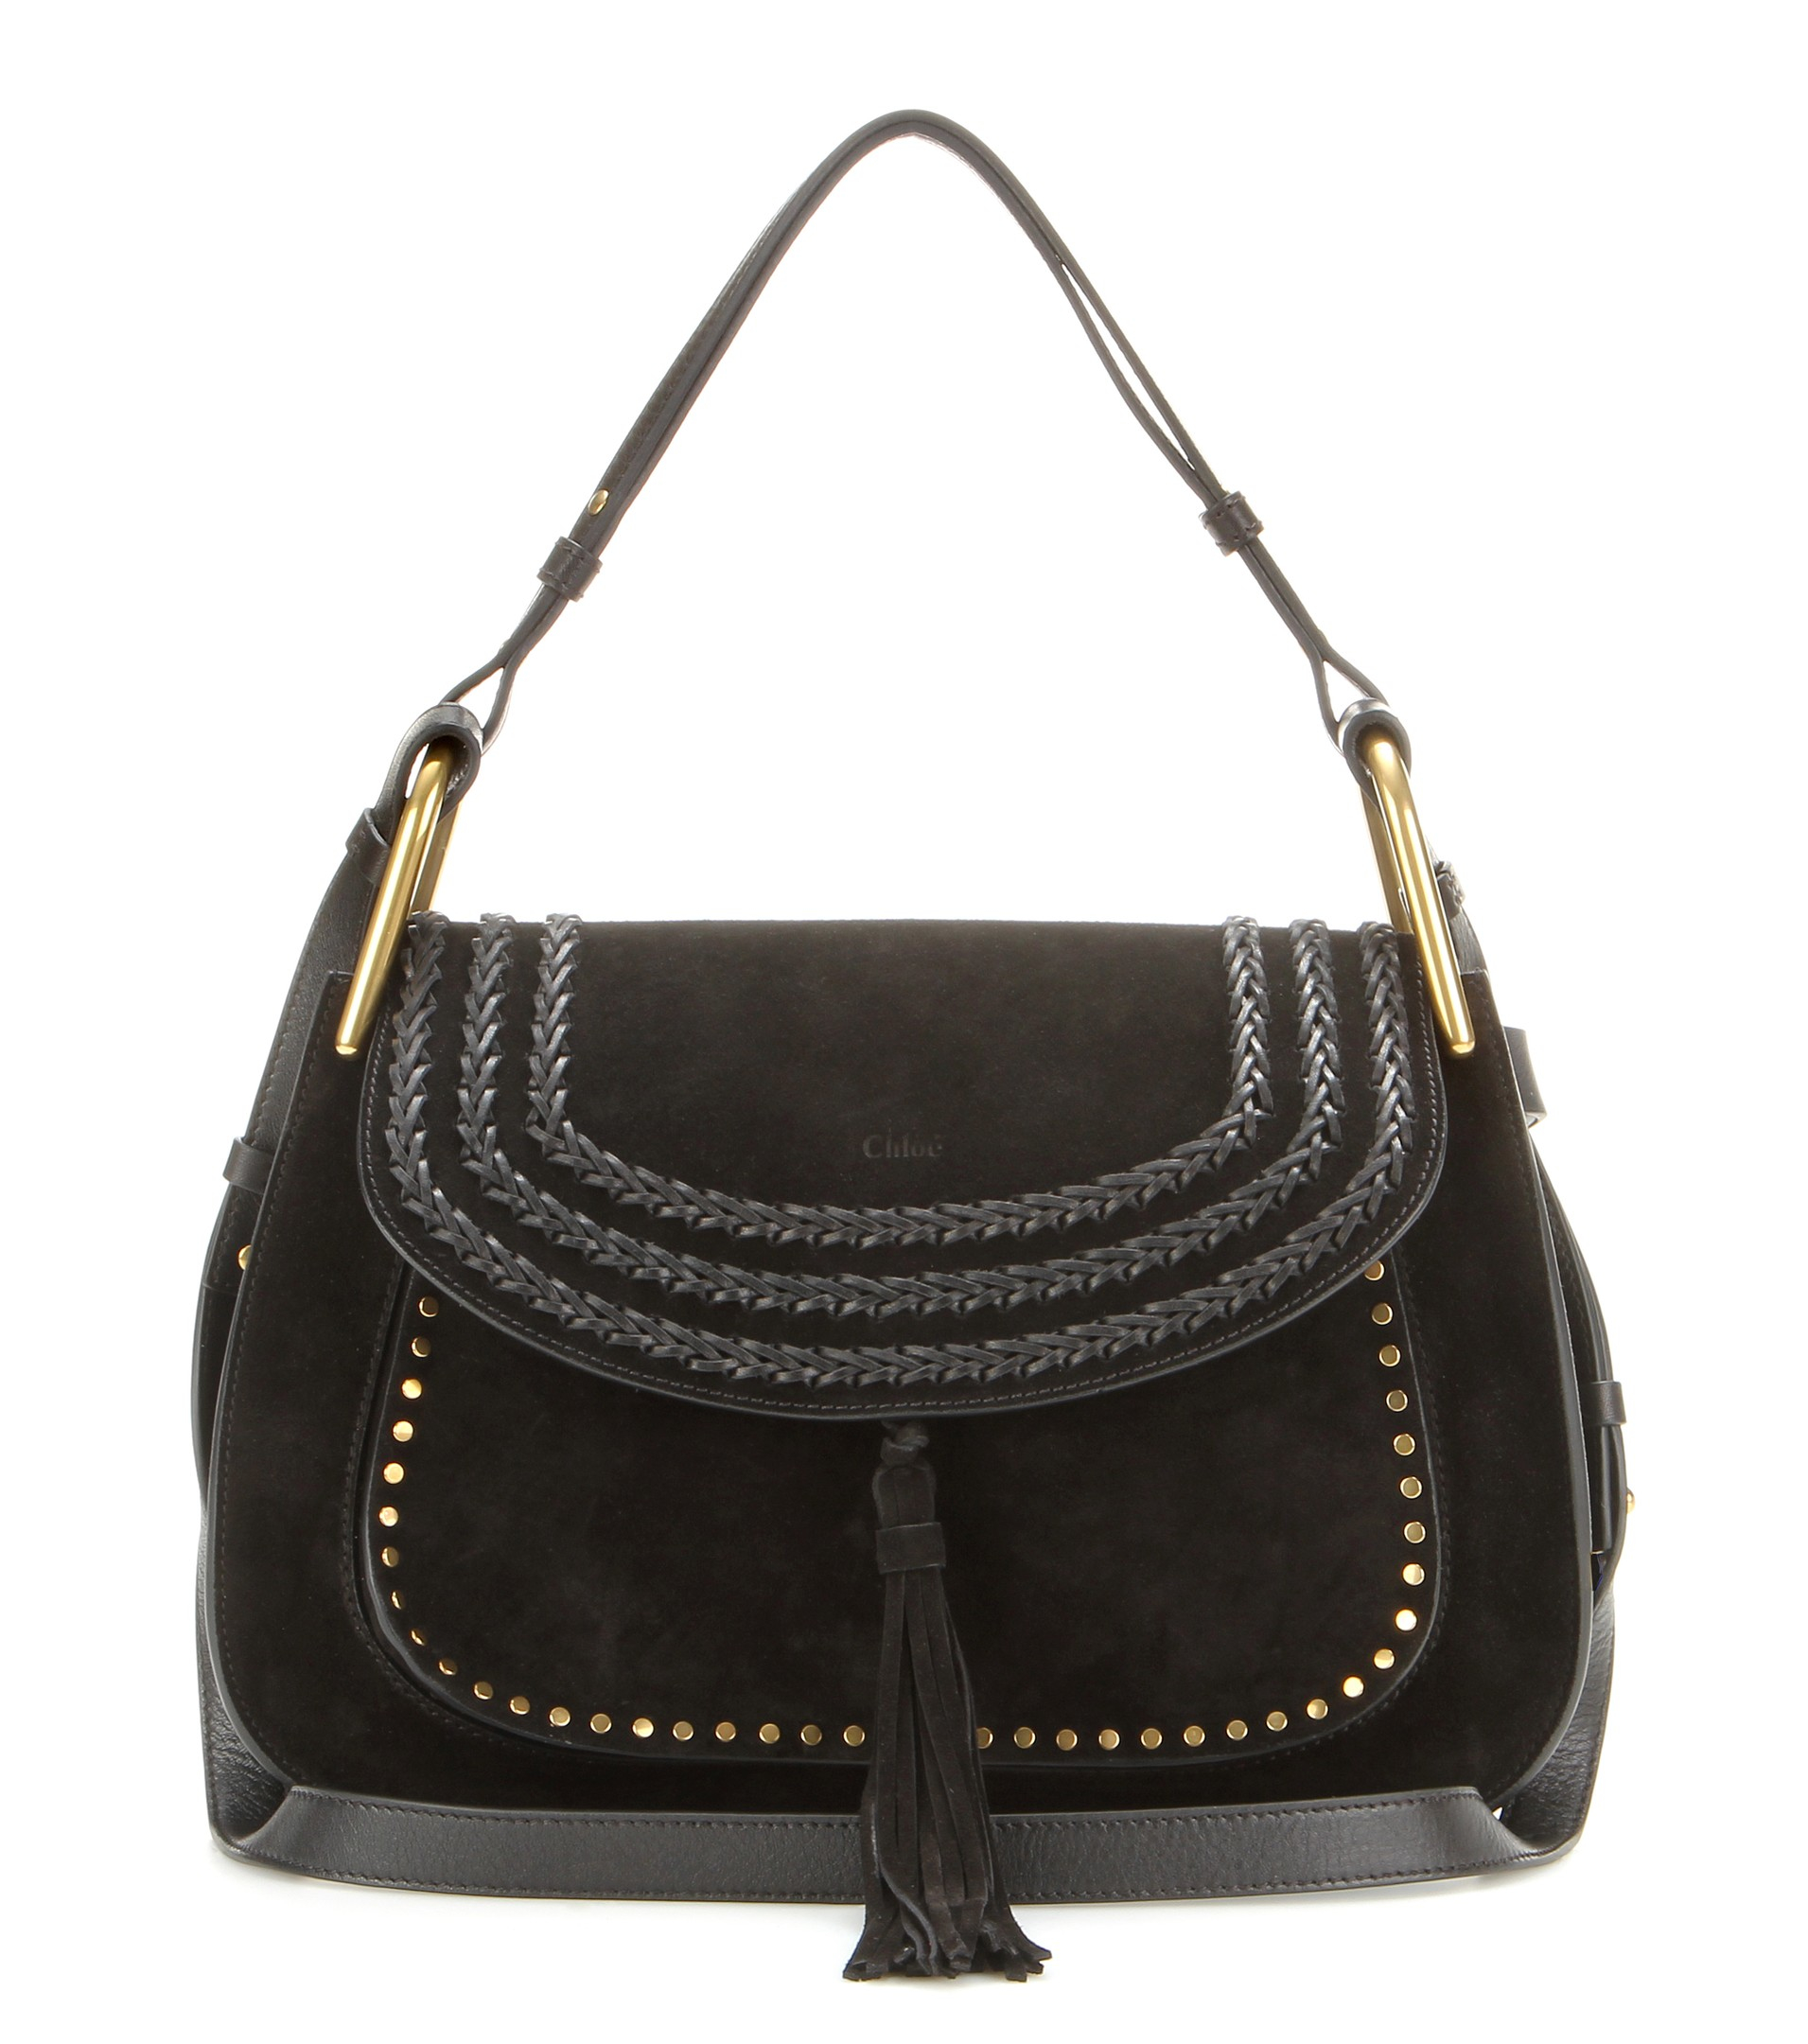 chloe bag online shop - Chlo Hudson Small Suede Shoulder Bag in Black | Lyst